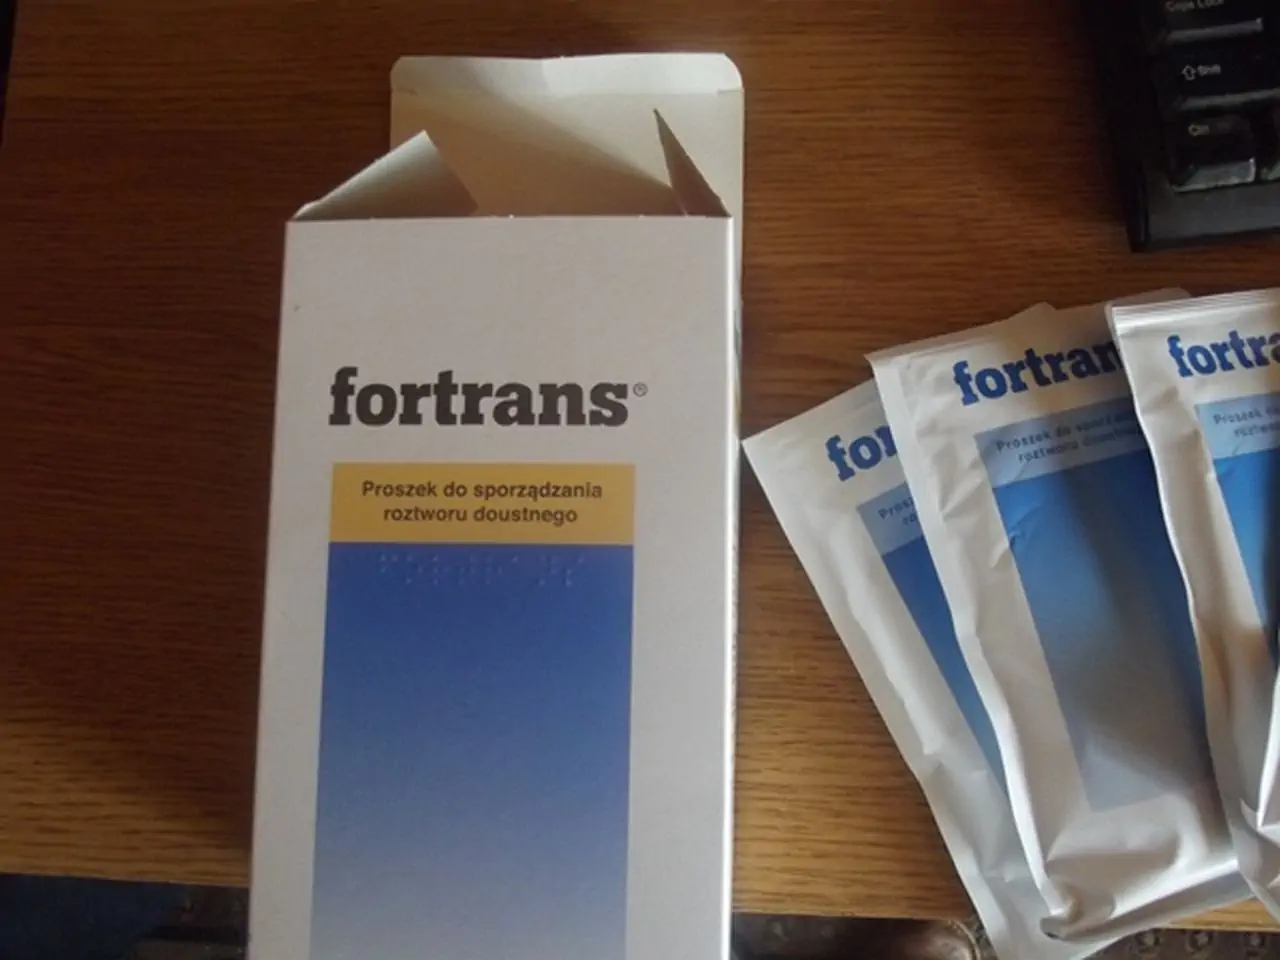 Hướng dẫn cách sử dụng thuốc Fortrans trước khi nội soi đại tràng